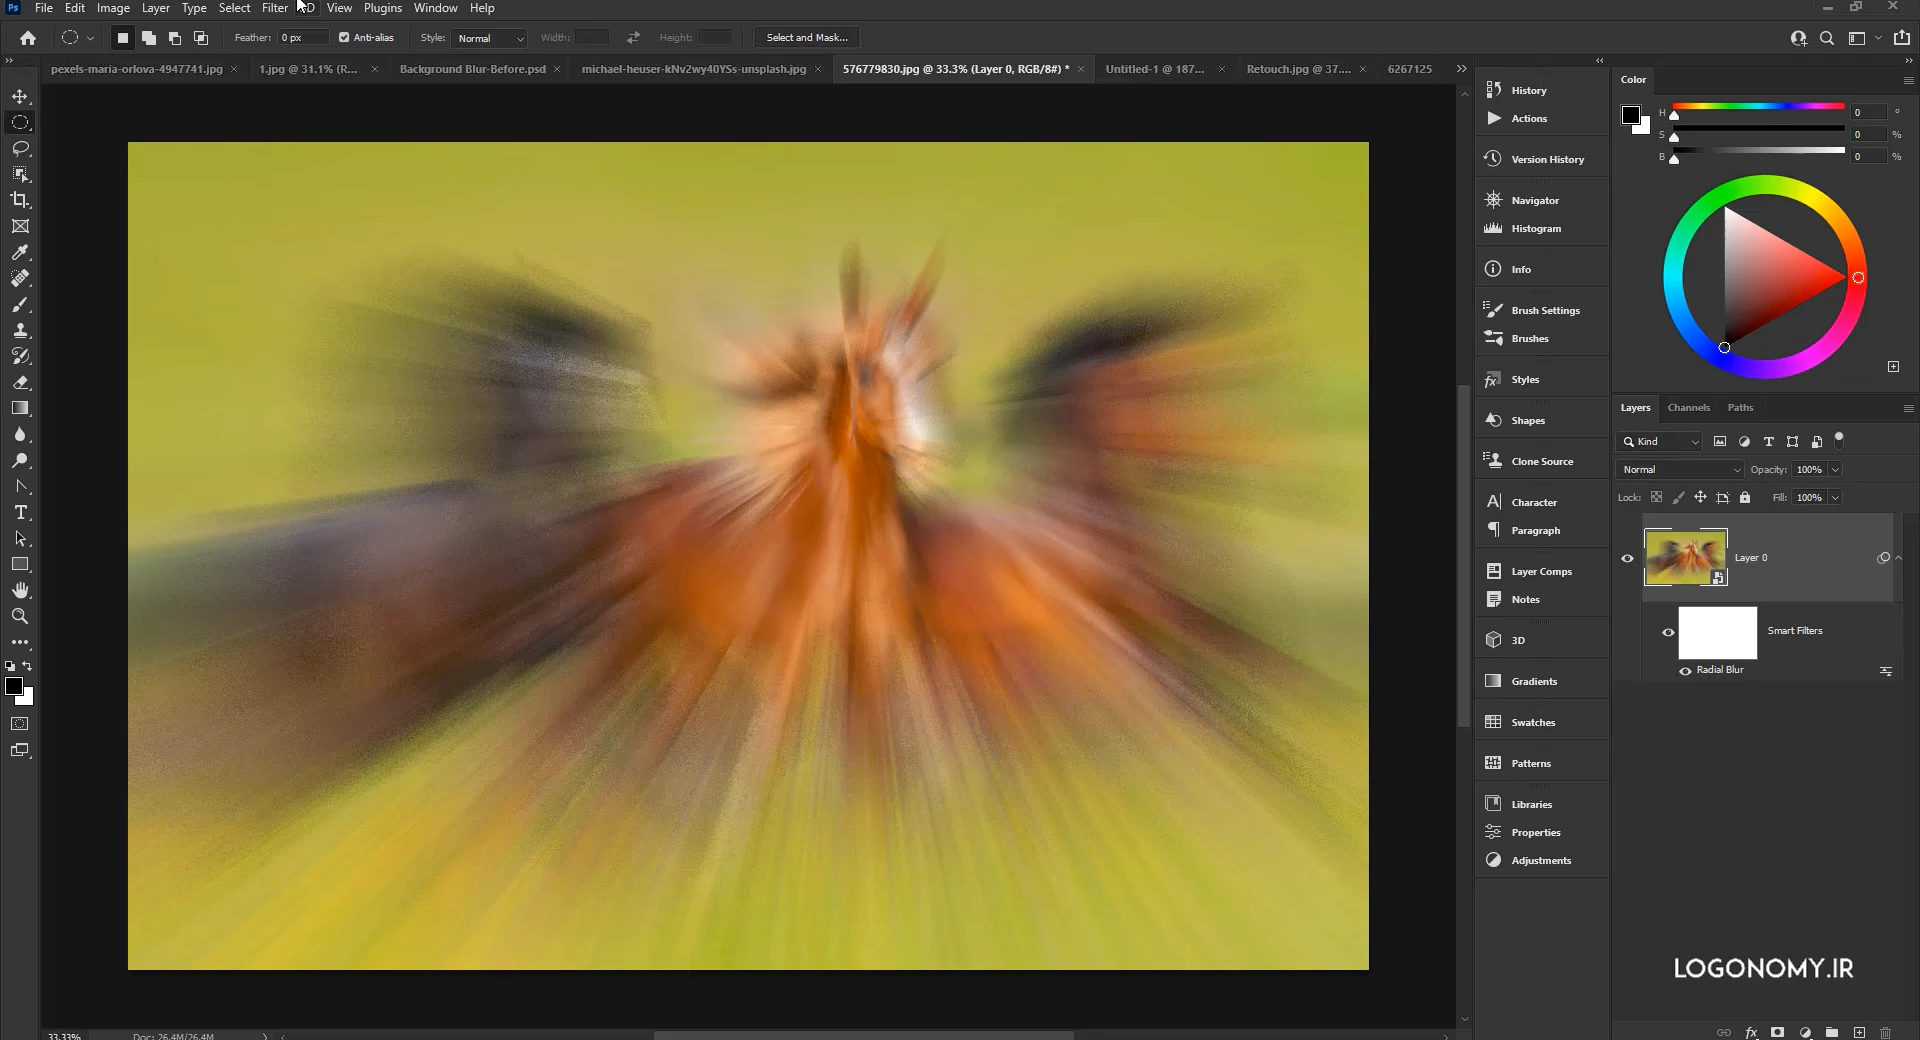 تار کردن تصاویر با فیلتر بلر (blur) در برنامه فتوشاپ (Photoshop)